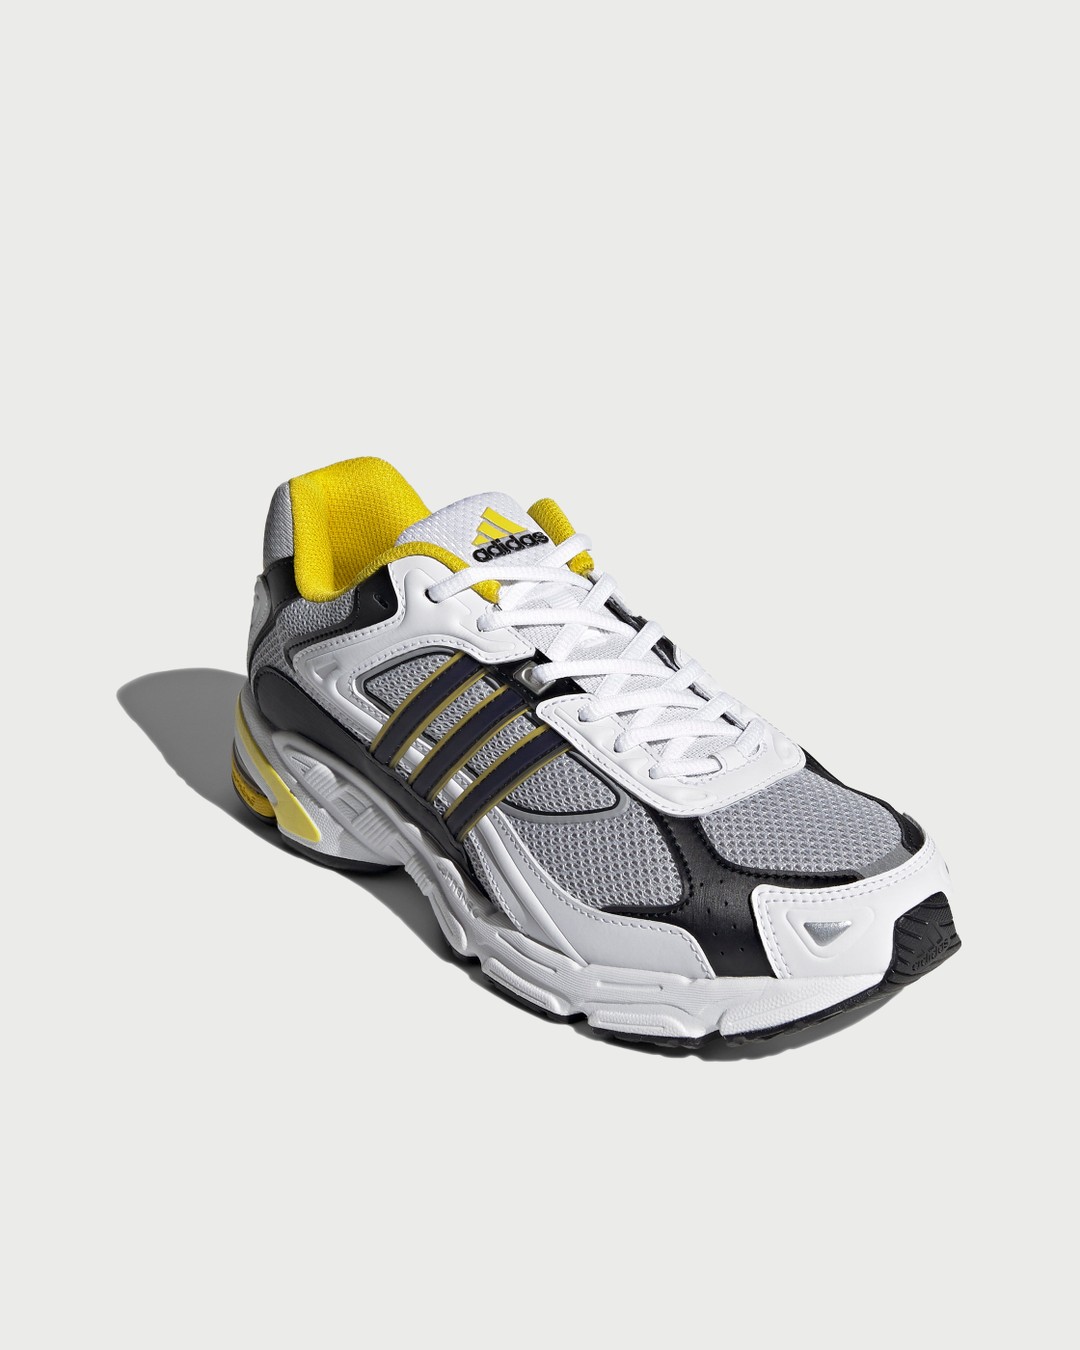 Adidas – Response CL White/Yellow - Sneakers - White - Image 3